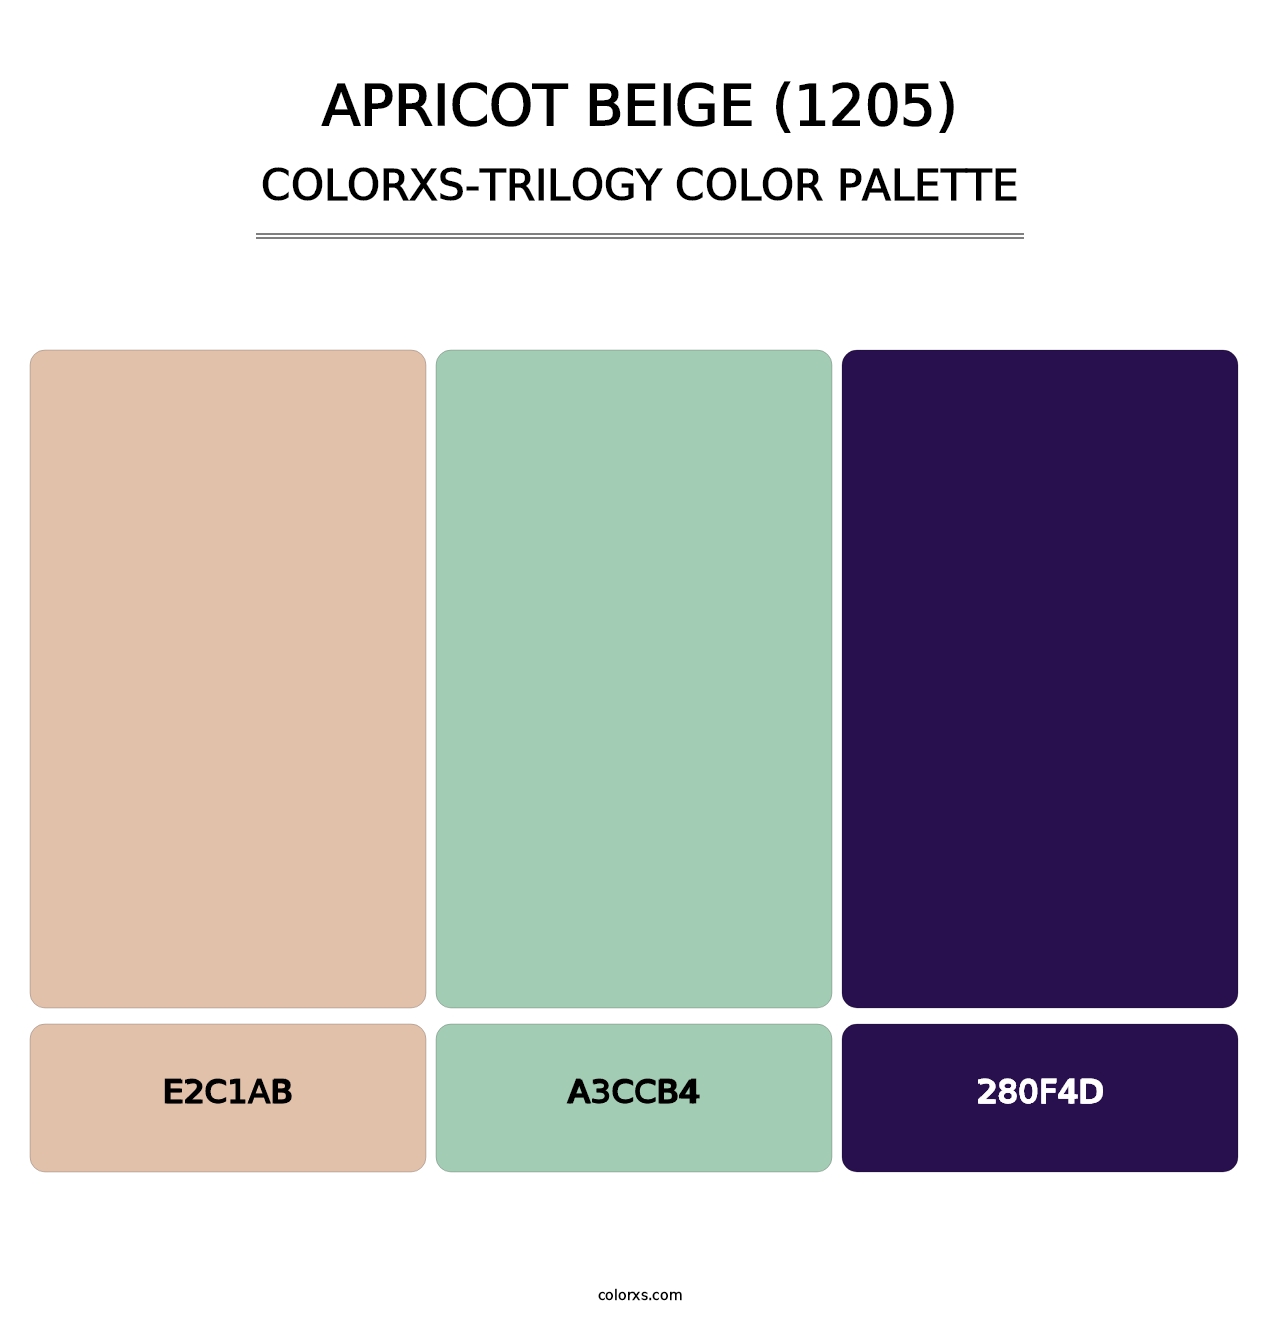 Apricot Beige (1205) - Colorxs Trilogy Palette